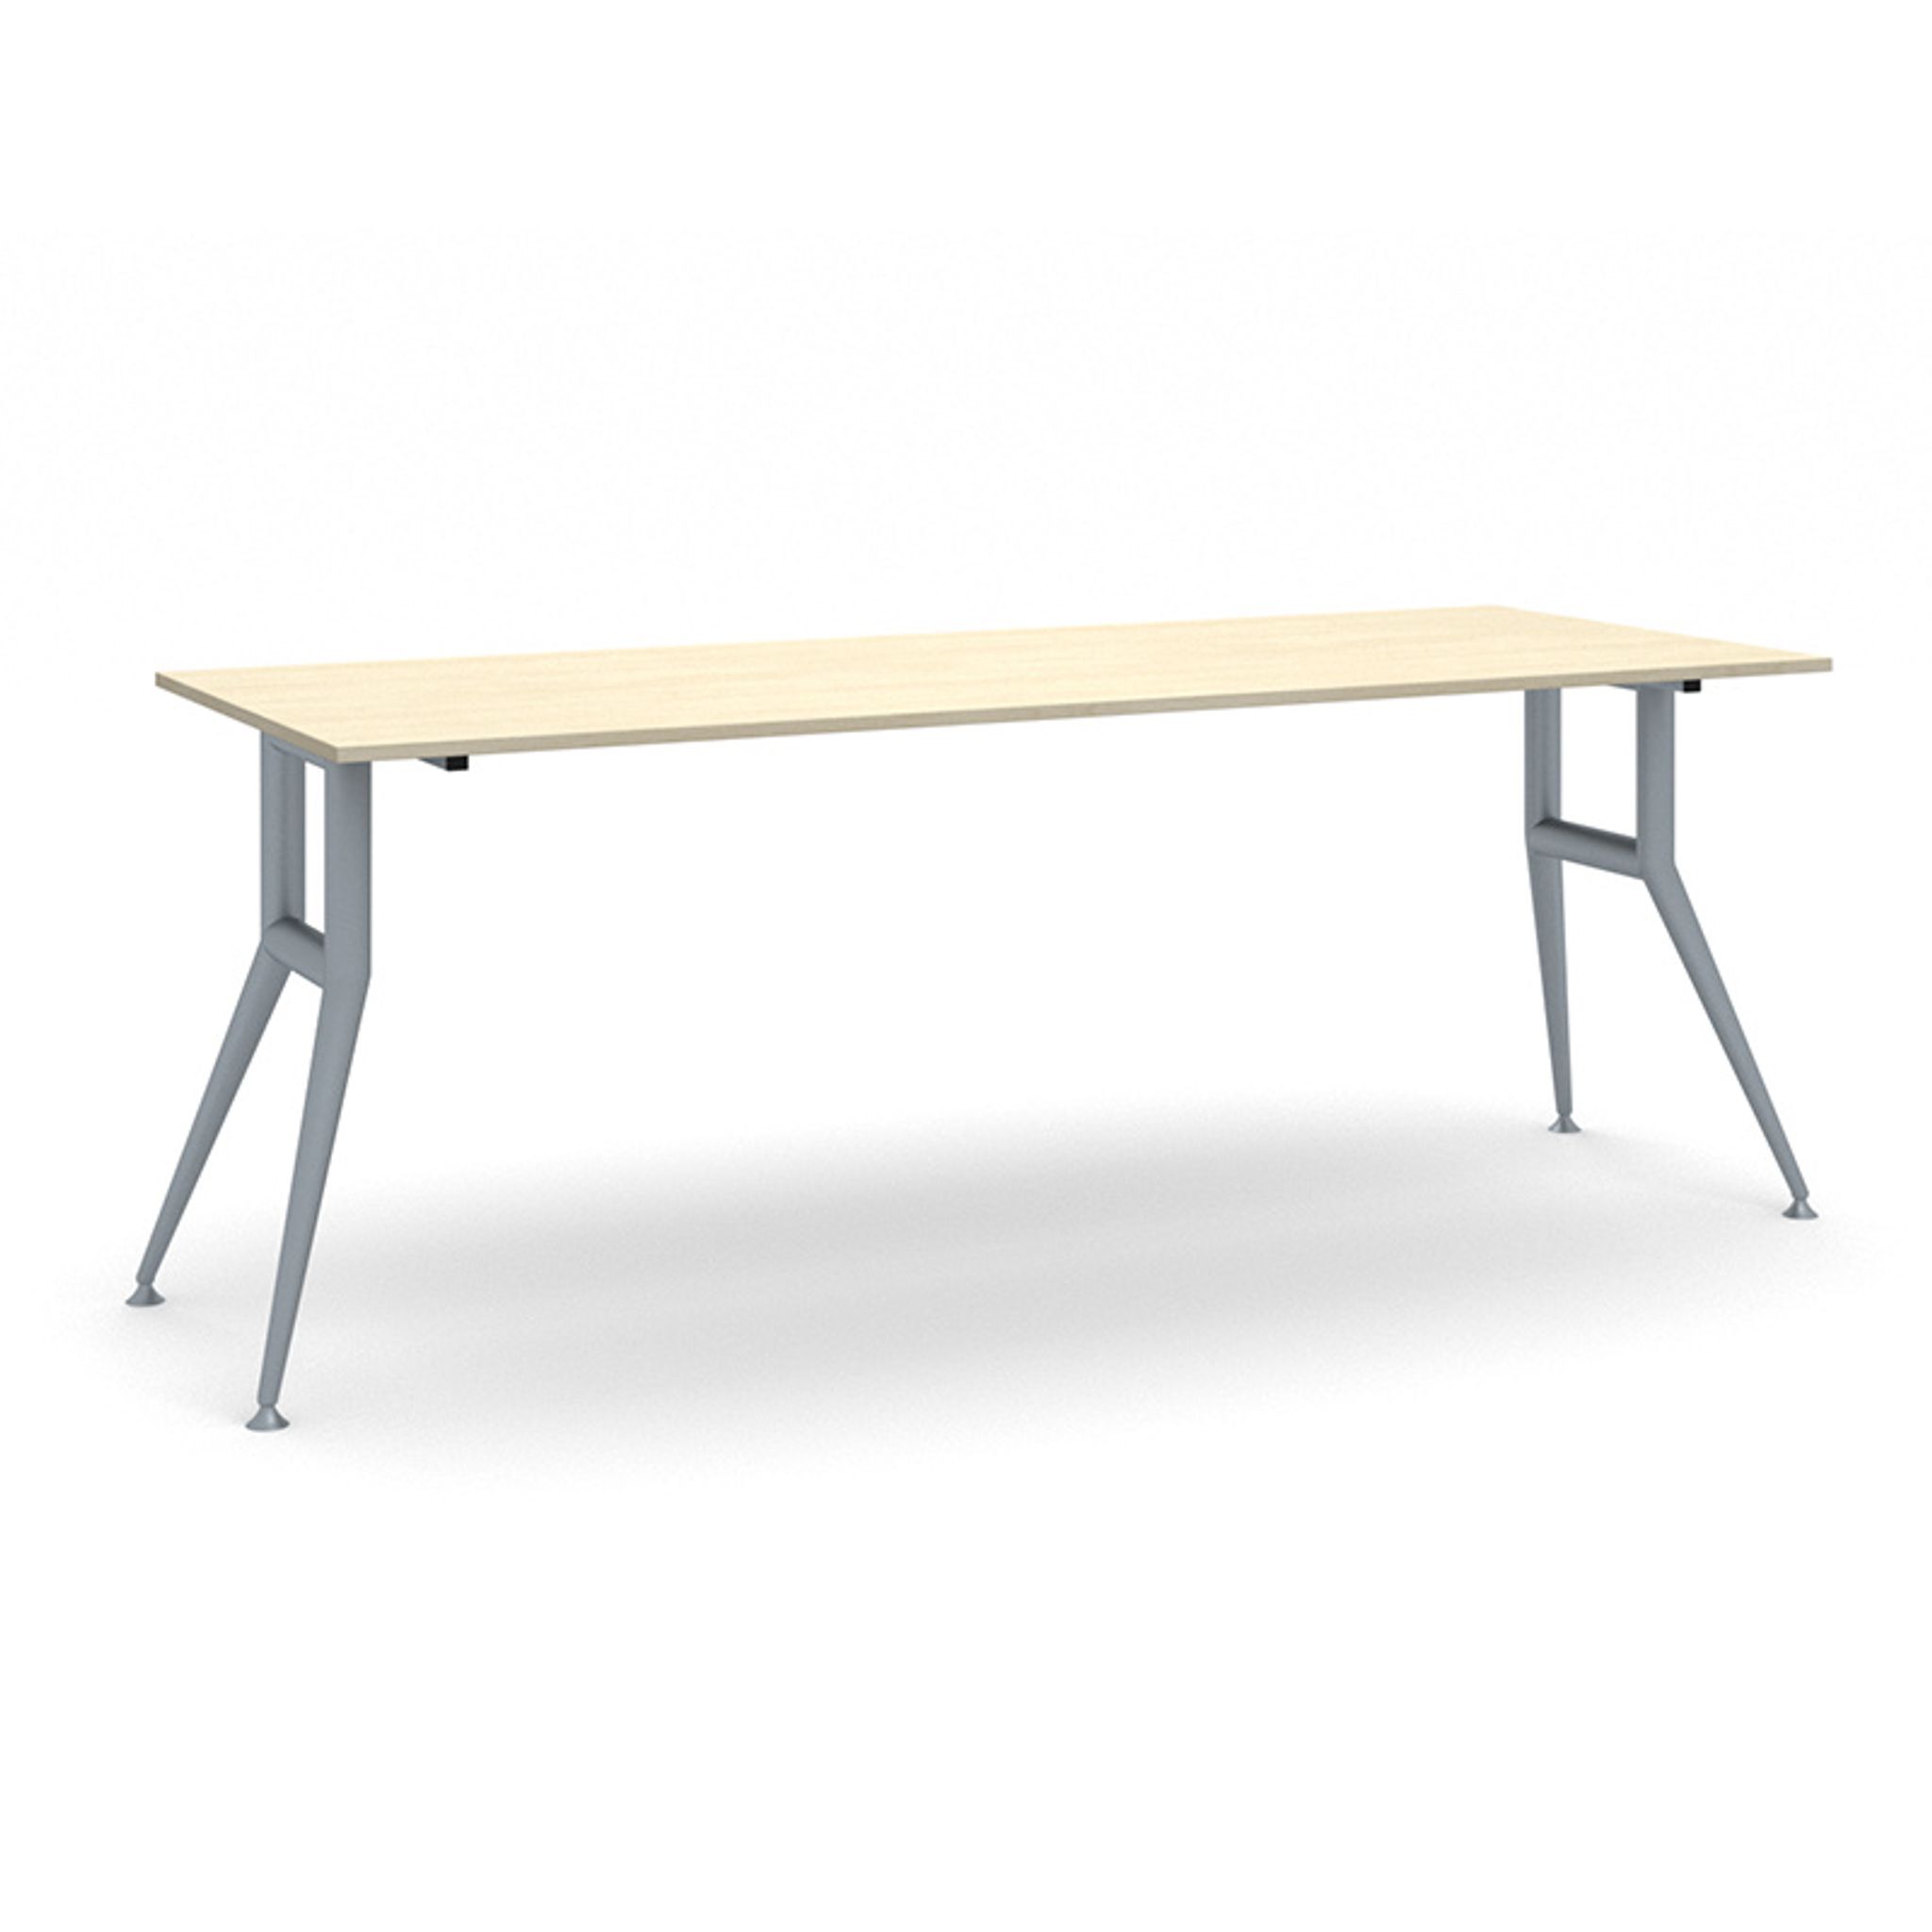 Rokovací stôl WIDE, 2000 x 800 mm, breza